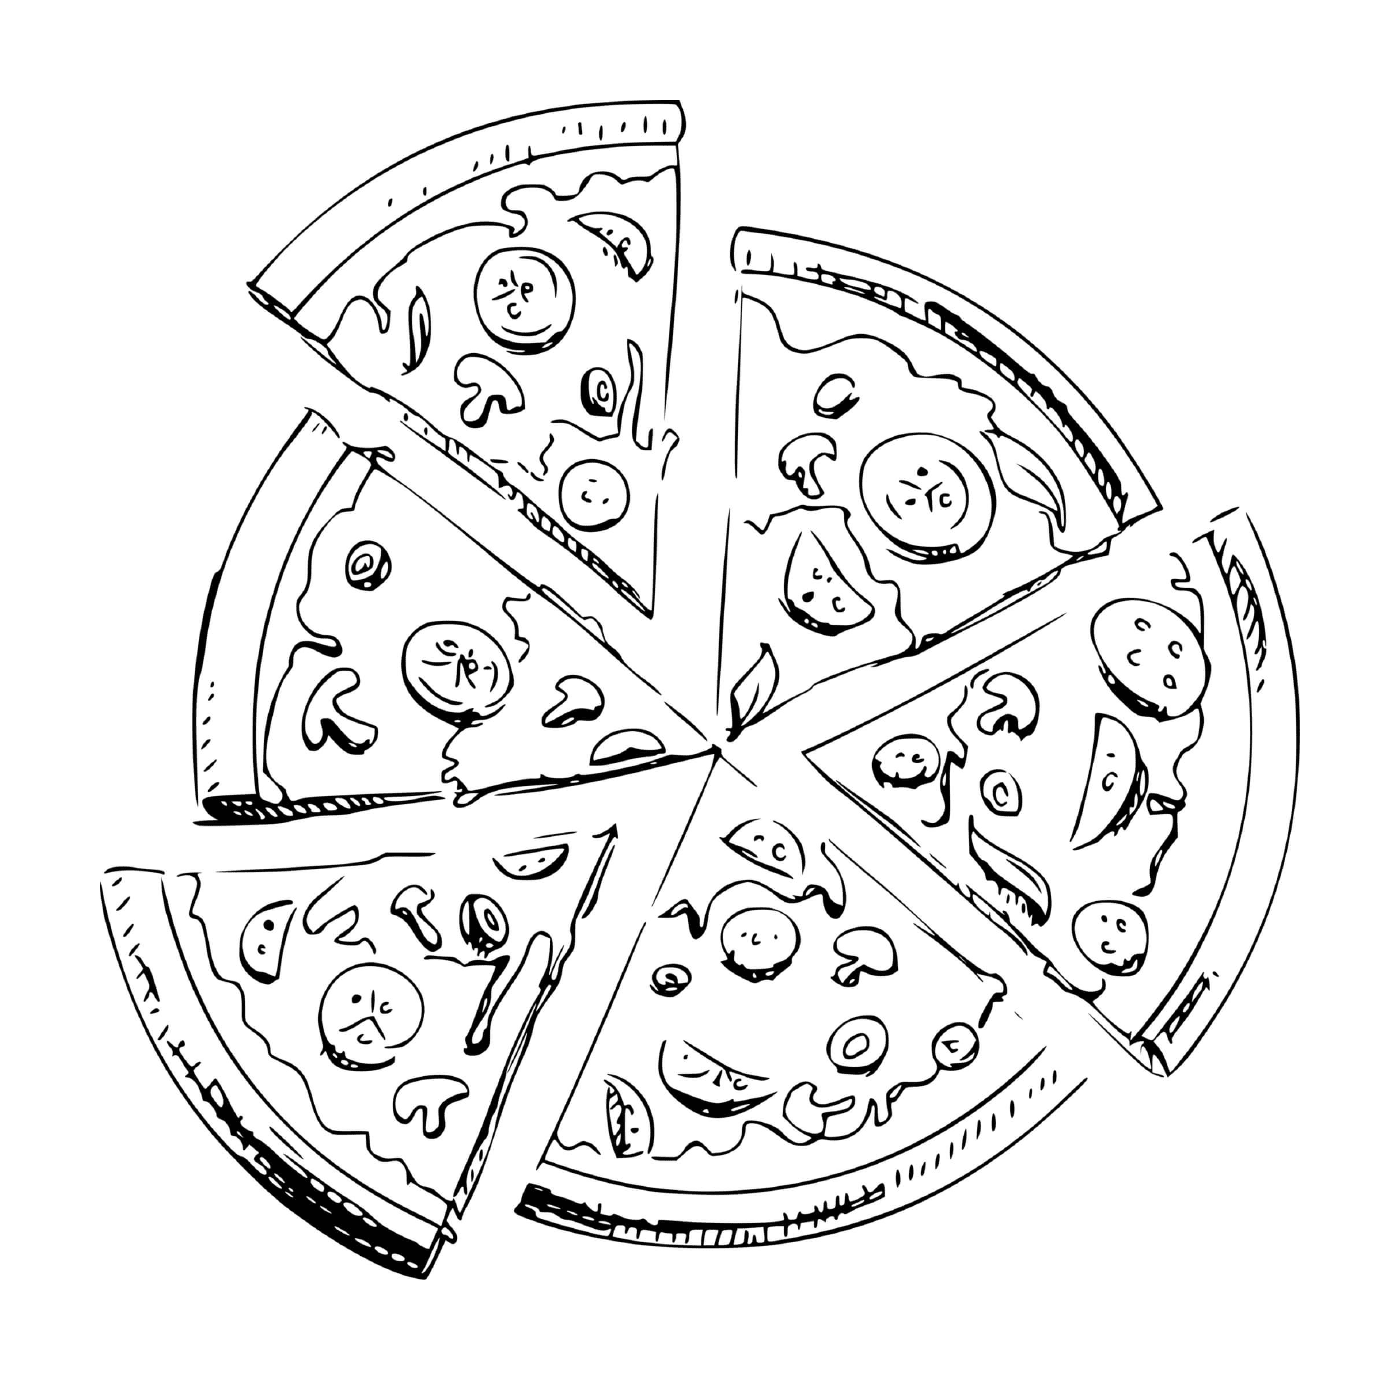  Sei pezzi di pizza 